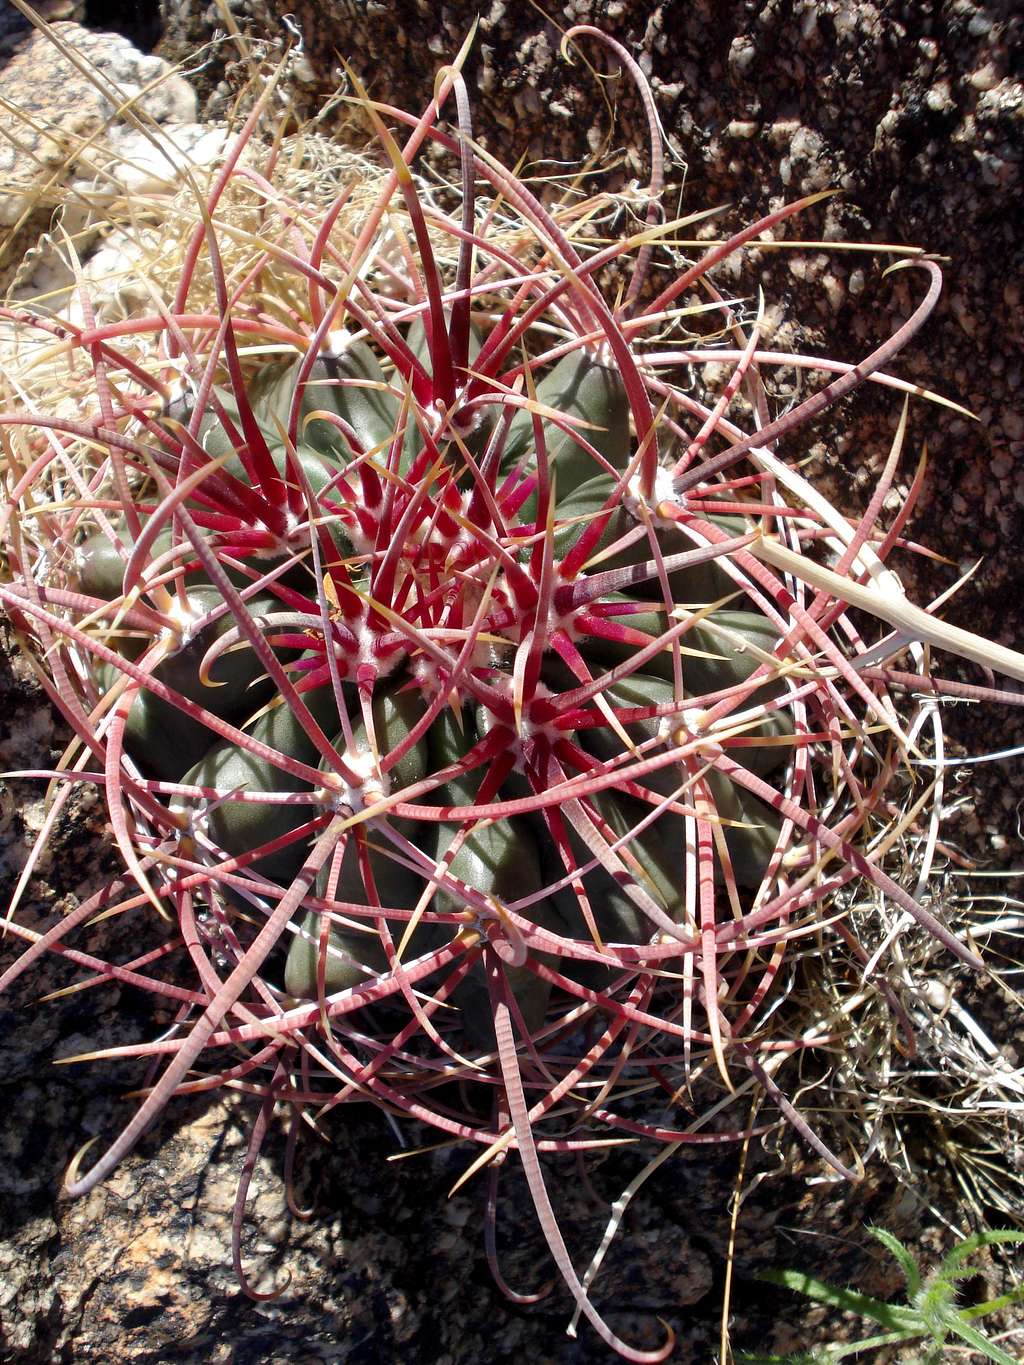 Barrel Cactus found on ascent of Rabbit Peak